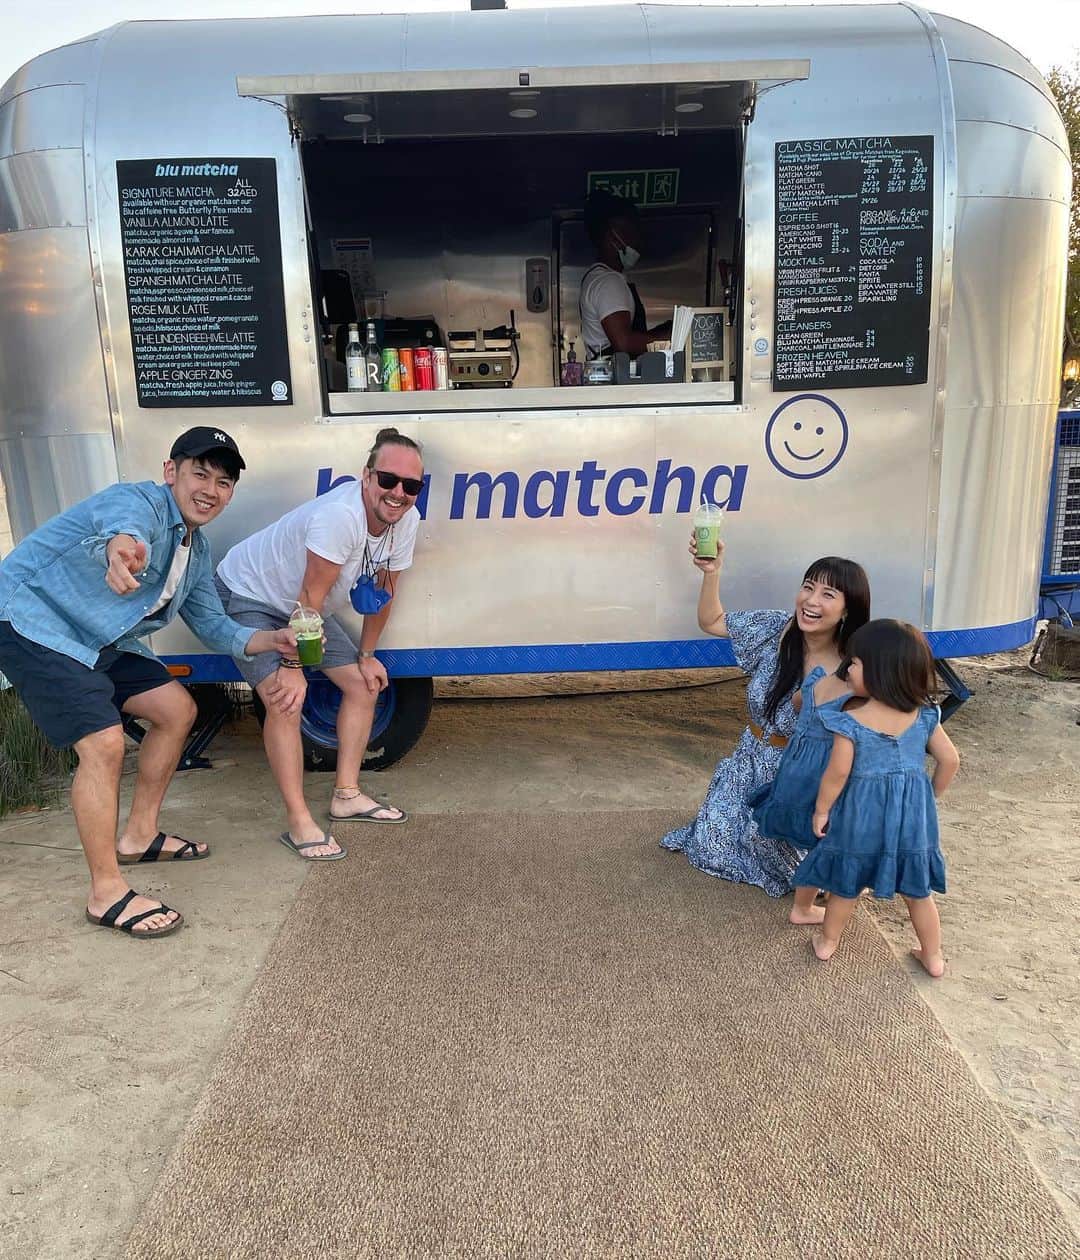 前田阿希子のインスタグラム：「There's a new matcha cafe in La Mer Beach that uses real matcha! I love matcha, but I've never had good matcha in Dubai, but here I can find real matcha that even Japanese people can appreciate!  You too can experience the real matcha🍵😋 Irrashaimase! ・ ・ ・  zuma時代にお世話になった アッシュさんは本当に日本が好きな人。 お友達と一緒にLa Mer Beachに 『blu matcha』という抹茶カフェを オープンさせたと聞き、お邪魔してきました🍵  八女、鹿児島、富士の抹茶を使い、 ちゃんと抹茶も冷凍庫で管理されています。  シンプルにアイス抹茶にした 『富士』はガツンとお茶の香りと渋みがきます。 日本で頂く抹茶と変わらない豊かな香り🤩 なかなかこちらで本格的な抹茶を頂けないので嬉しい☺️  そして、私が気になったのは 甘党なアラブの人たちに向けての 『スパニッシュ抹茶ラテ』！ ドバイで人気のカフェメニュー、 スパニッシュラテを抹茶バージョンにしたもので、 抹茶、エスプレッソ、コンデンスミルクなどが 入っています。  抹茶の豊かな香りとミルキーなコンデンスミルクの相性は もちろんバッチリ！ その後に、エスプレッソの香ばしさが 追いかけてくるのが私にとってはすごく新鮮で これがまた美味しい😋  子どもたちには抹茶ソフトクリーム。 きちんと管理されたお抹茶が使われているので お茶の香りもしっかりして大人も楽しめますし、 抹茶ラバーの双子は夢中で食べていました🐥🐥🍨  そうそう、枚目の動画で双子が食べているのは ブルーと抹茶のミックス😳 ちょっと毒々しいなぁ😂と思ったら まさかのスーパーフード・ スピルリナで青くしたものだそう😳 この辺りの感覚は日本人にはないなぁ… 味は濃厚バニラと抹茶のミックスです🤤  アーモンドミルクも自家製で、フレッシュ。 とにかく素材にこだわっていて ナチュラル、オーガニックさは 日本よりも重要視しているように感じます。  これからドバイはどんどん暑くなって ますますビーチが楽しい季節！  またちょこちょこお邪魔しまーす😆 ・ ・ ・ #blumatcha #matcha #matchalover #fuji#yame #kagoshima#spanishmatcha  #twins#dubai#dubailife  #写真や動画の時だけマスク外してもらってます」